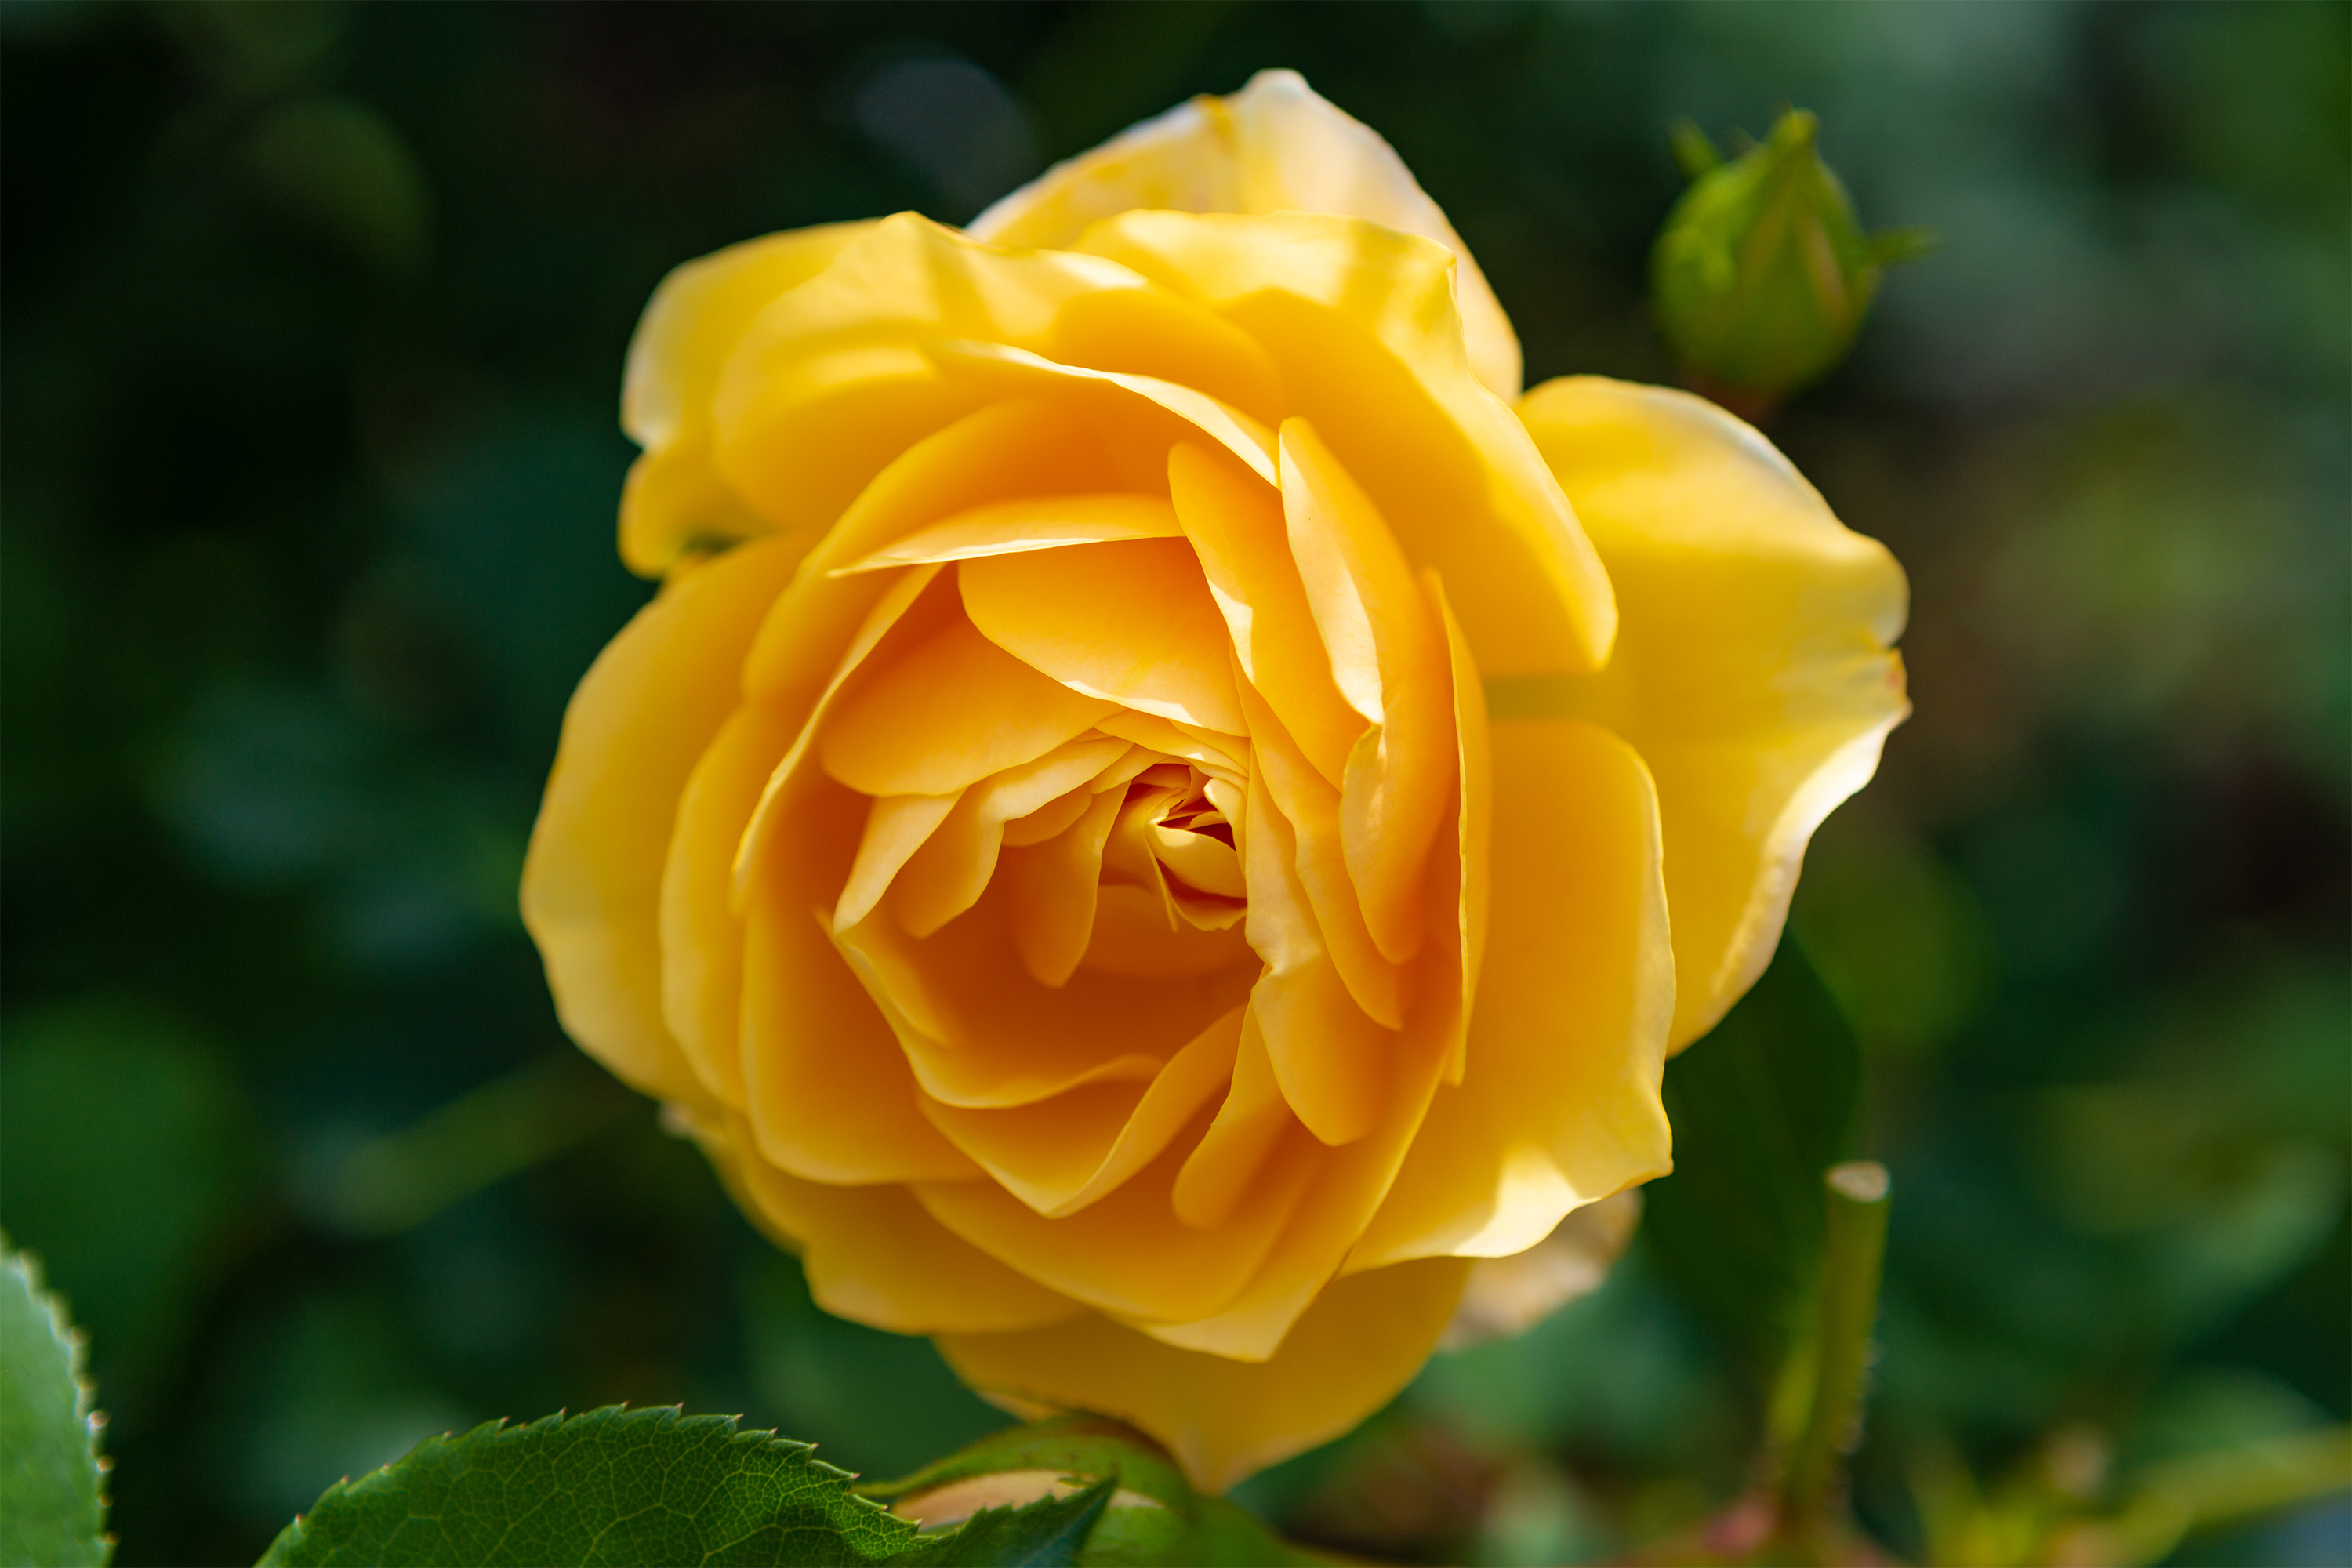 黄色いバラ 薔薇 04 無料の高画質フリー写真素材 イメージズラボ